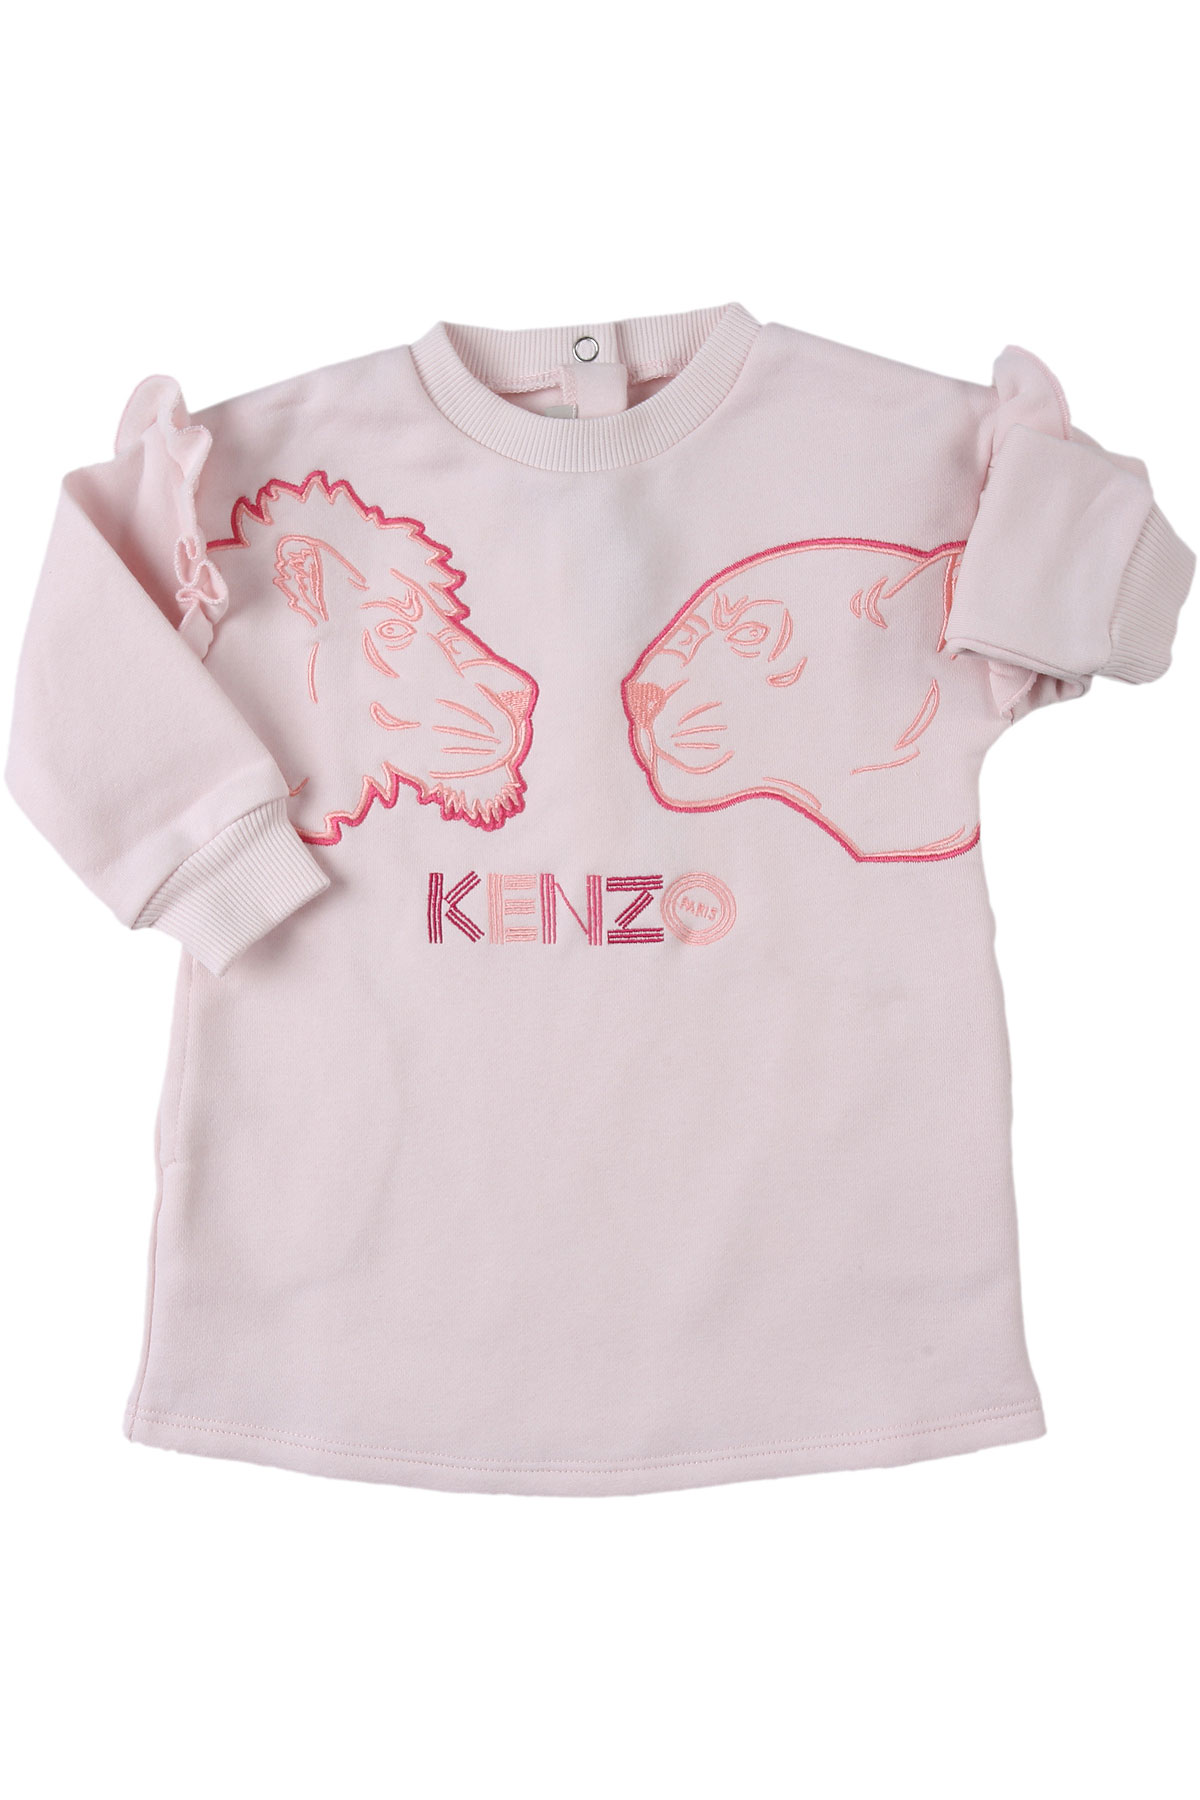 Kenzo Baby Kleid für Mädchen Günstig im Sale, Pink, Baumwolle, 2017, 12M 18M